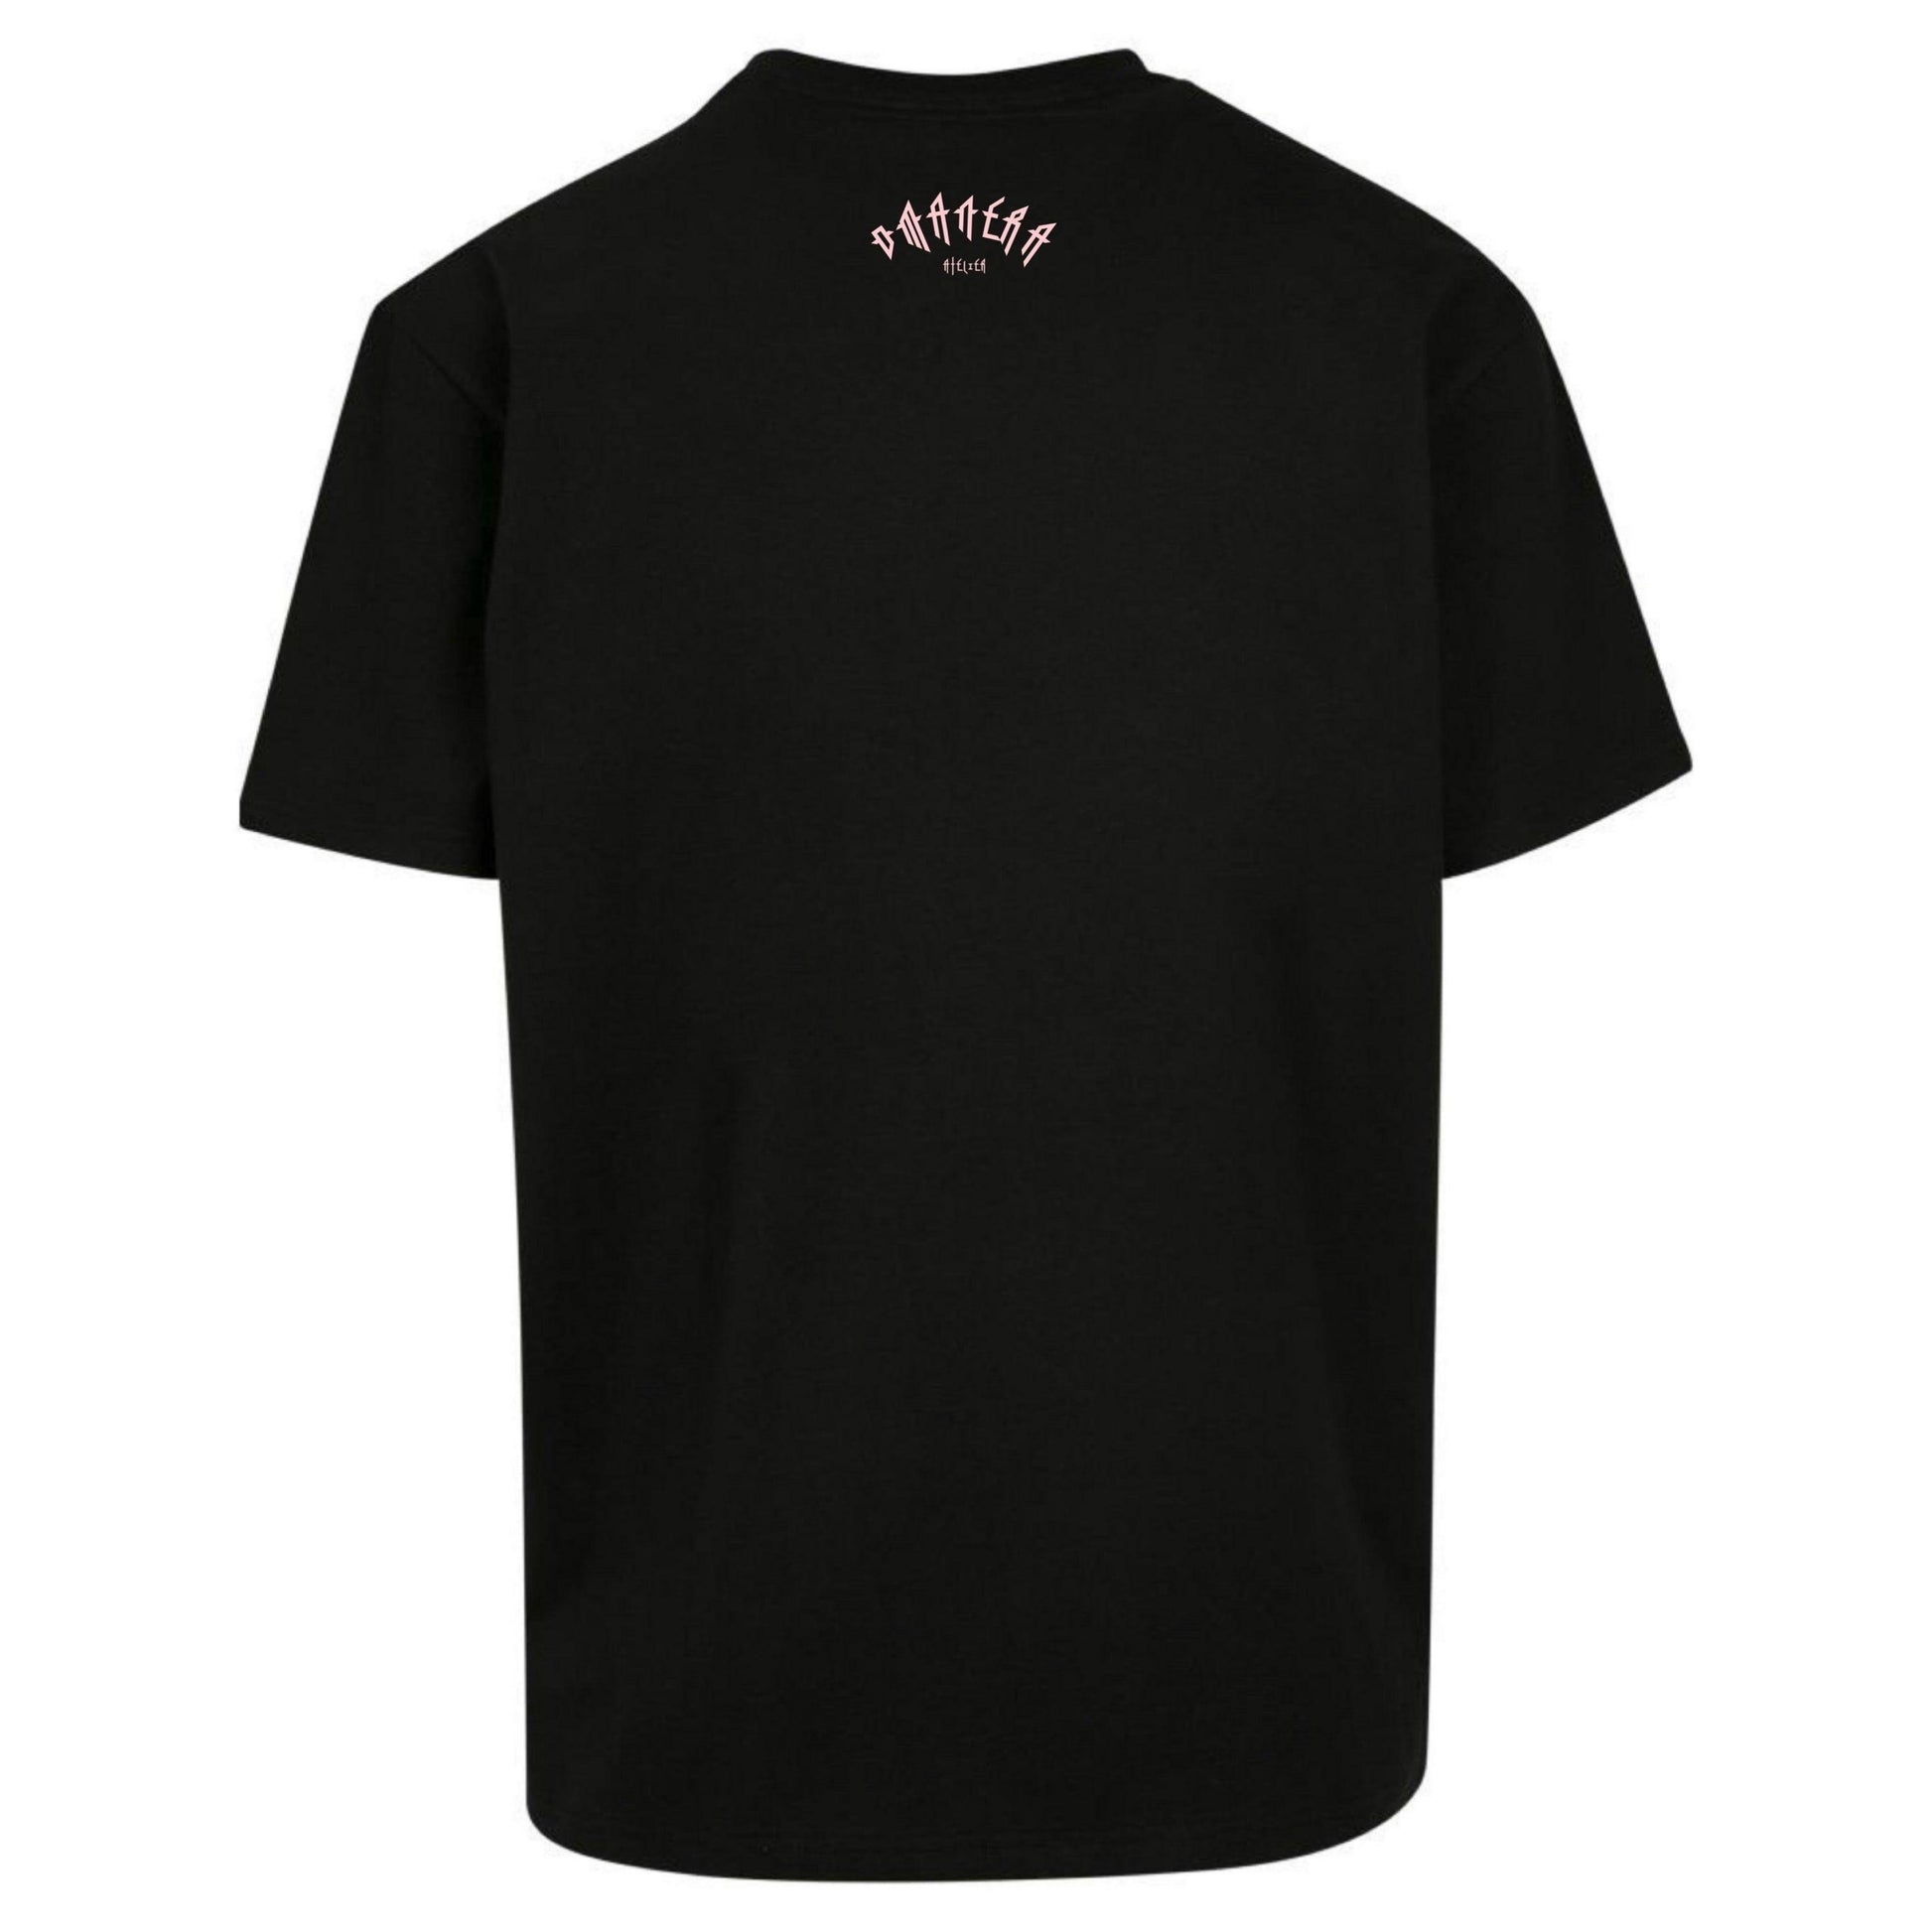 Oversize Shirt Black/Rosé 240 g/m² - DMANERA Atelier